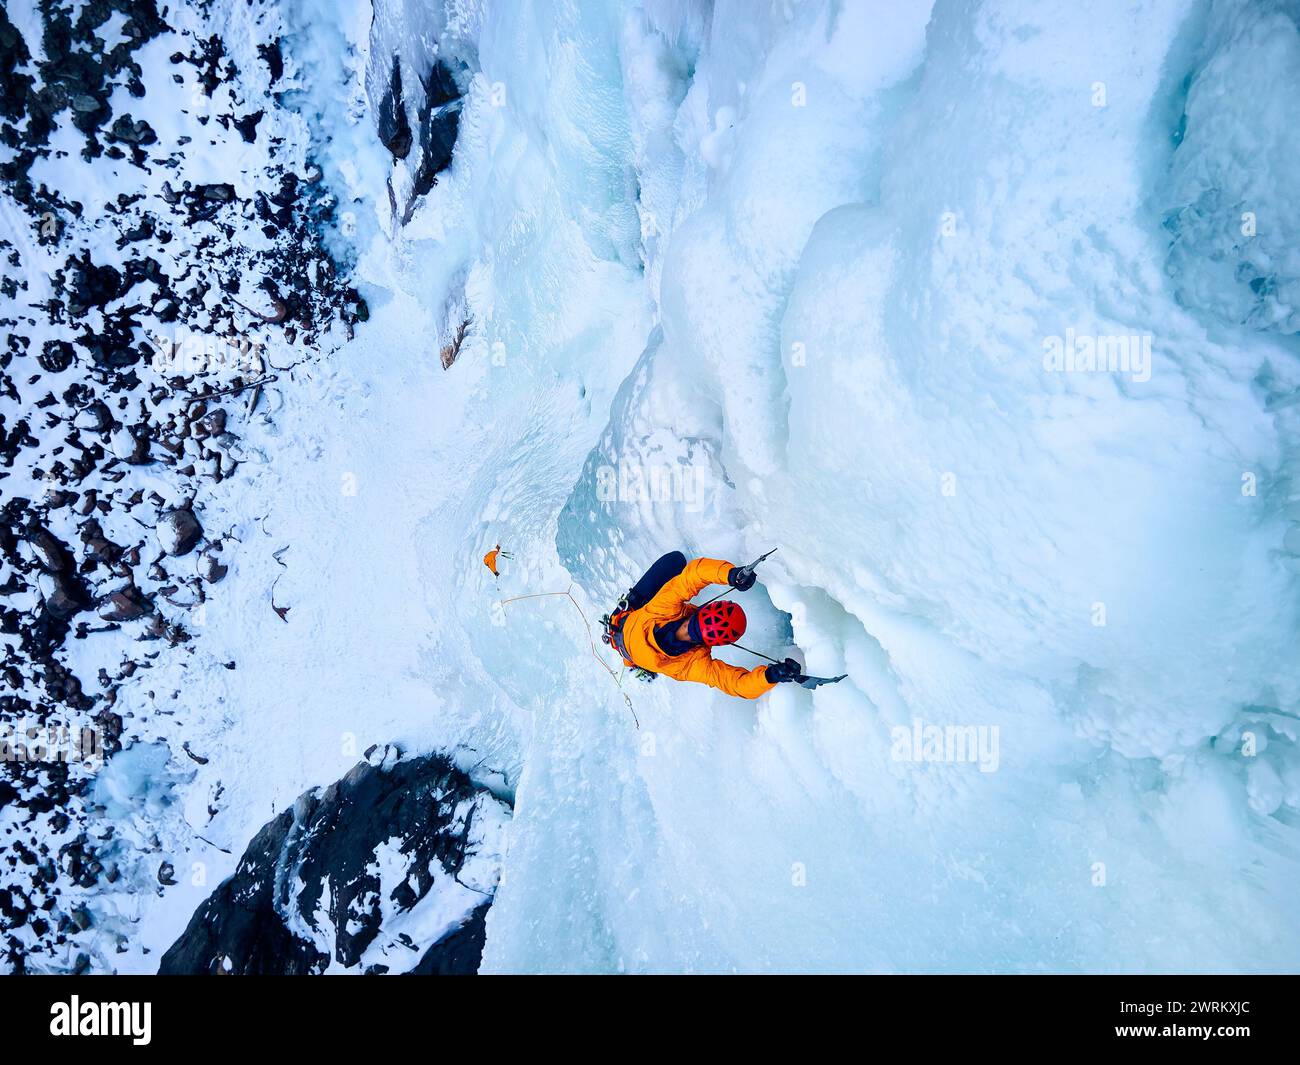 Vue aérienne drone de l'athlète en veste orange escalade de glace à grande cascade gelée dans la gorge Barskoon la vallée de montagne au Kirghizistan Banque D'Images